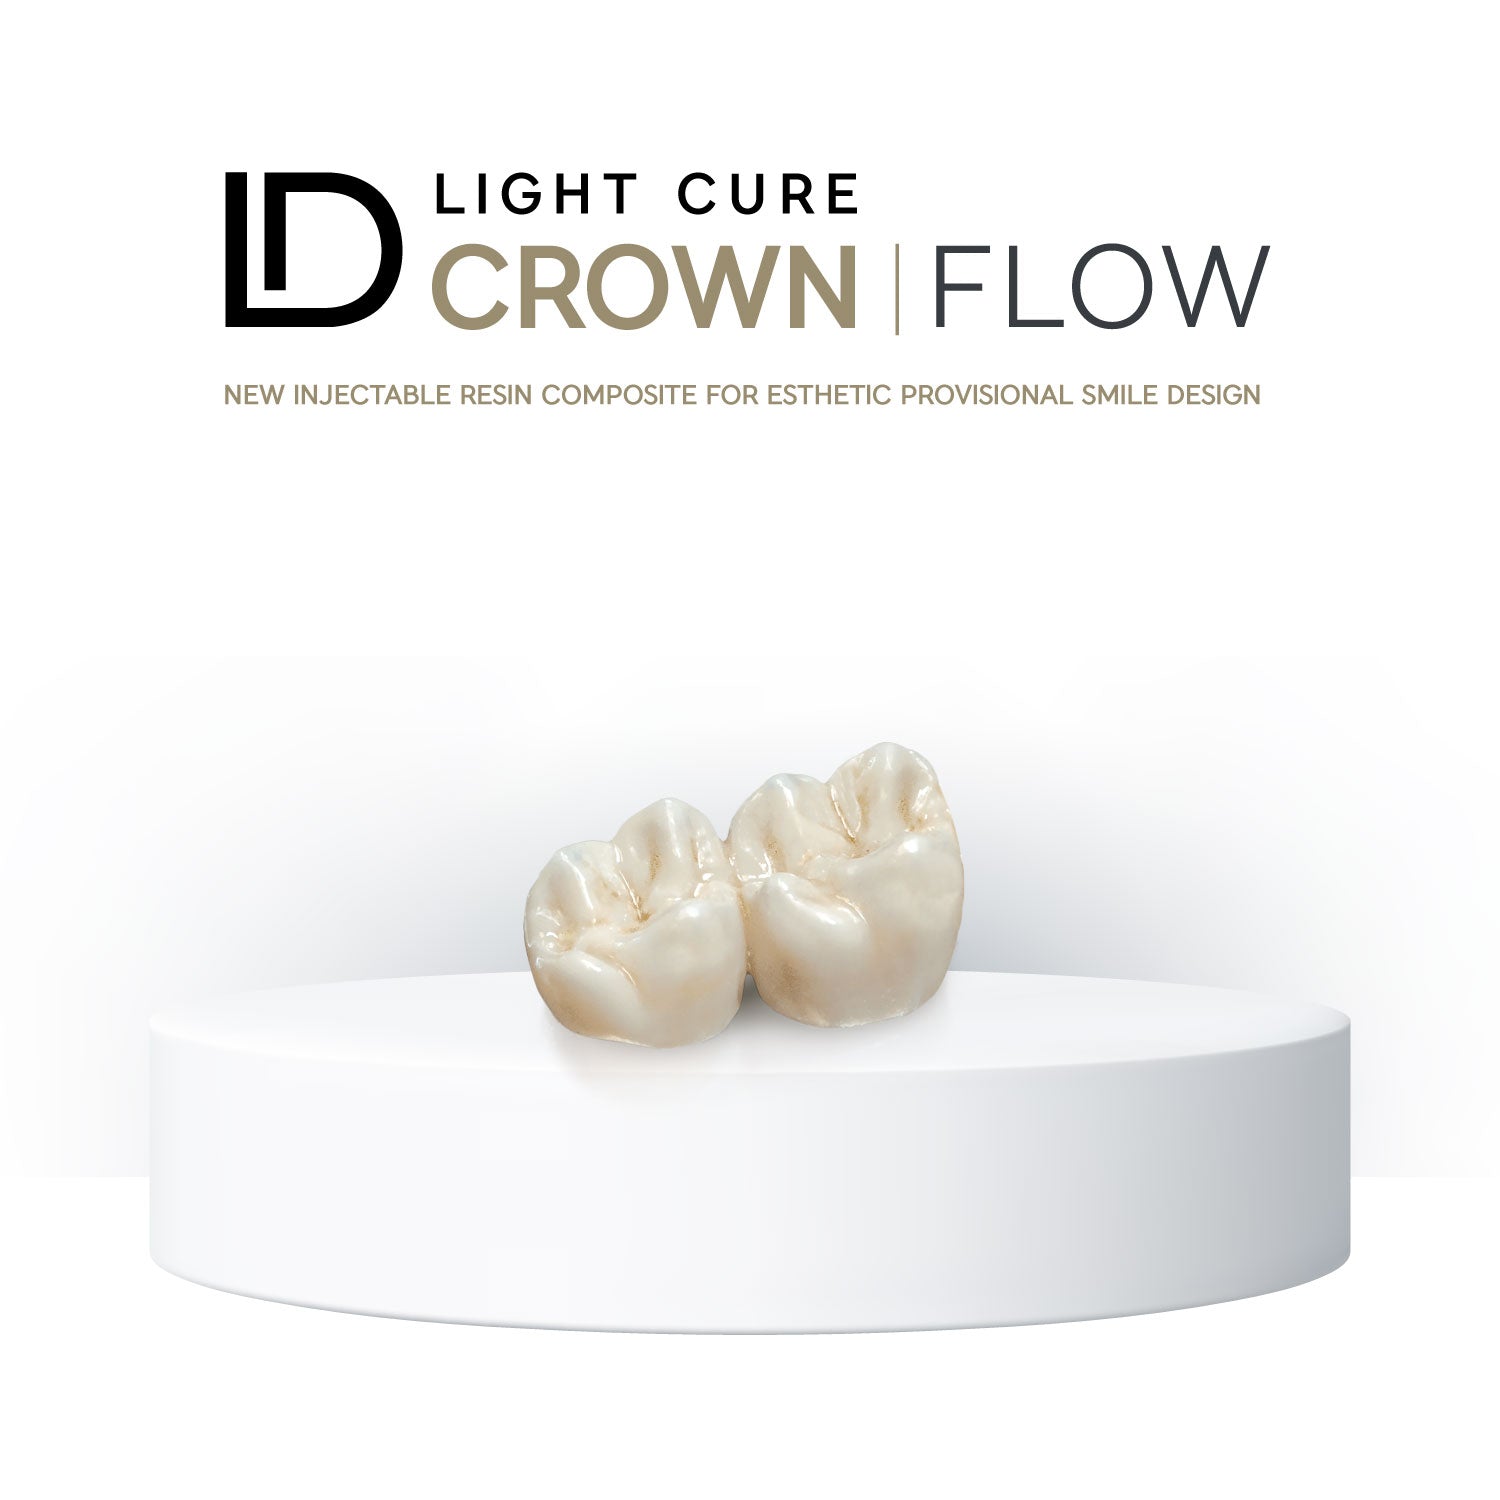 ID CROWN FLOW es un composite directo e indirecto fotopolimerizable, fluido o inyectable, para la producción precisa y sencilla de restauraciones estéticas provisionales sin monómeros.